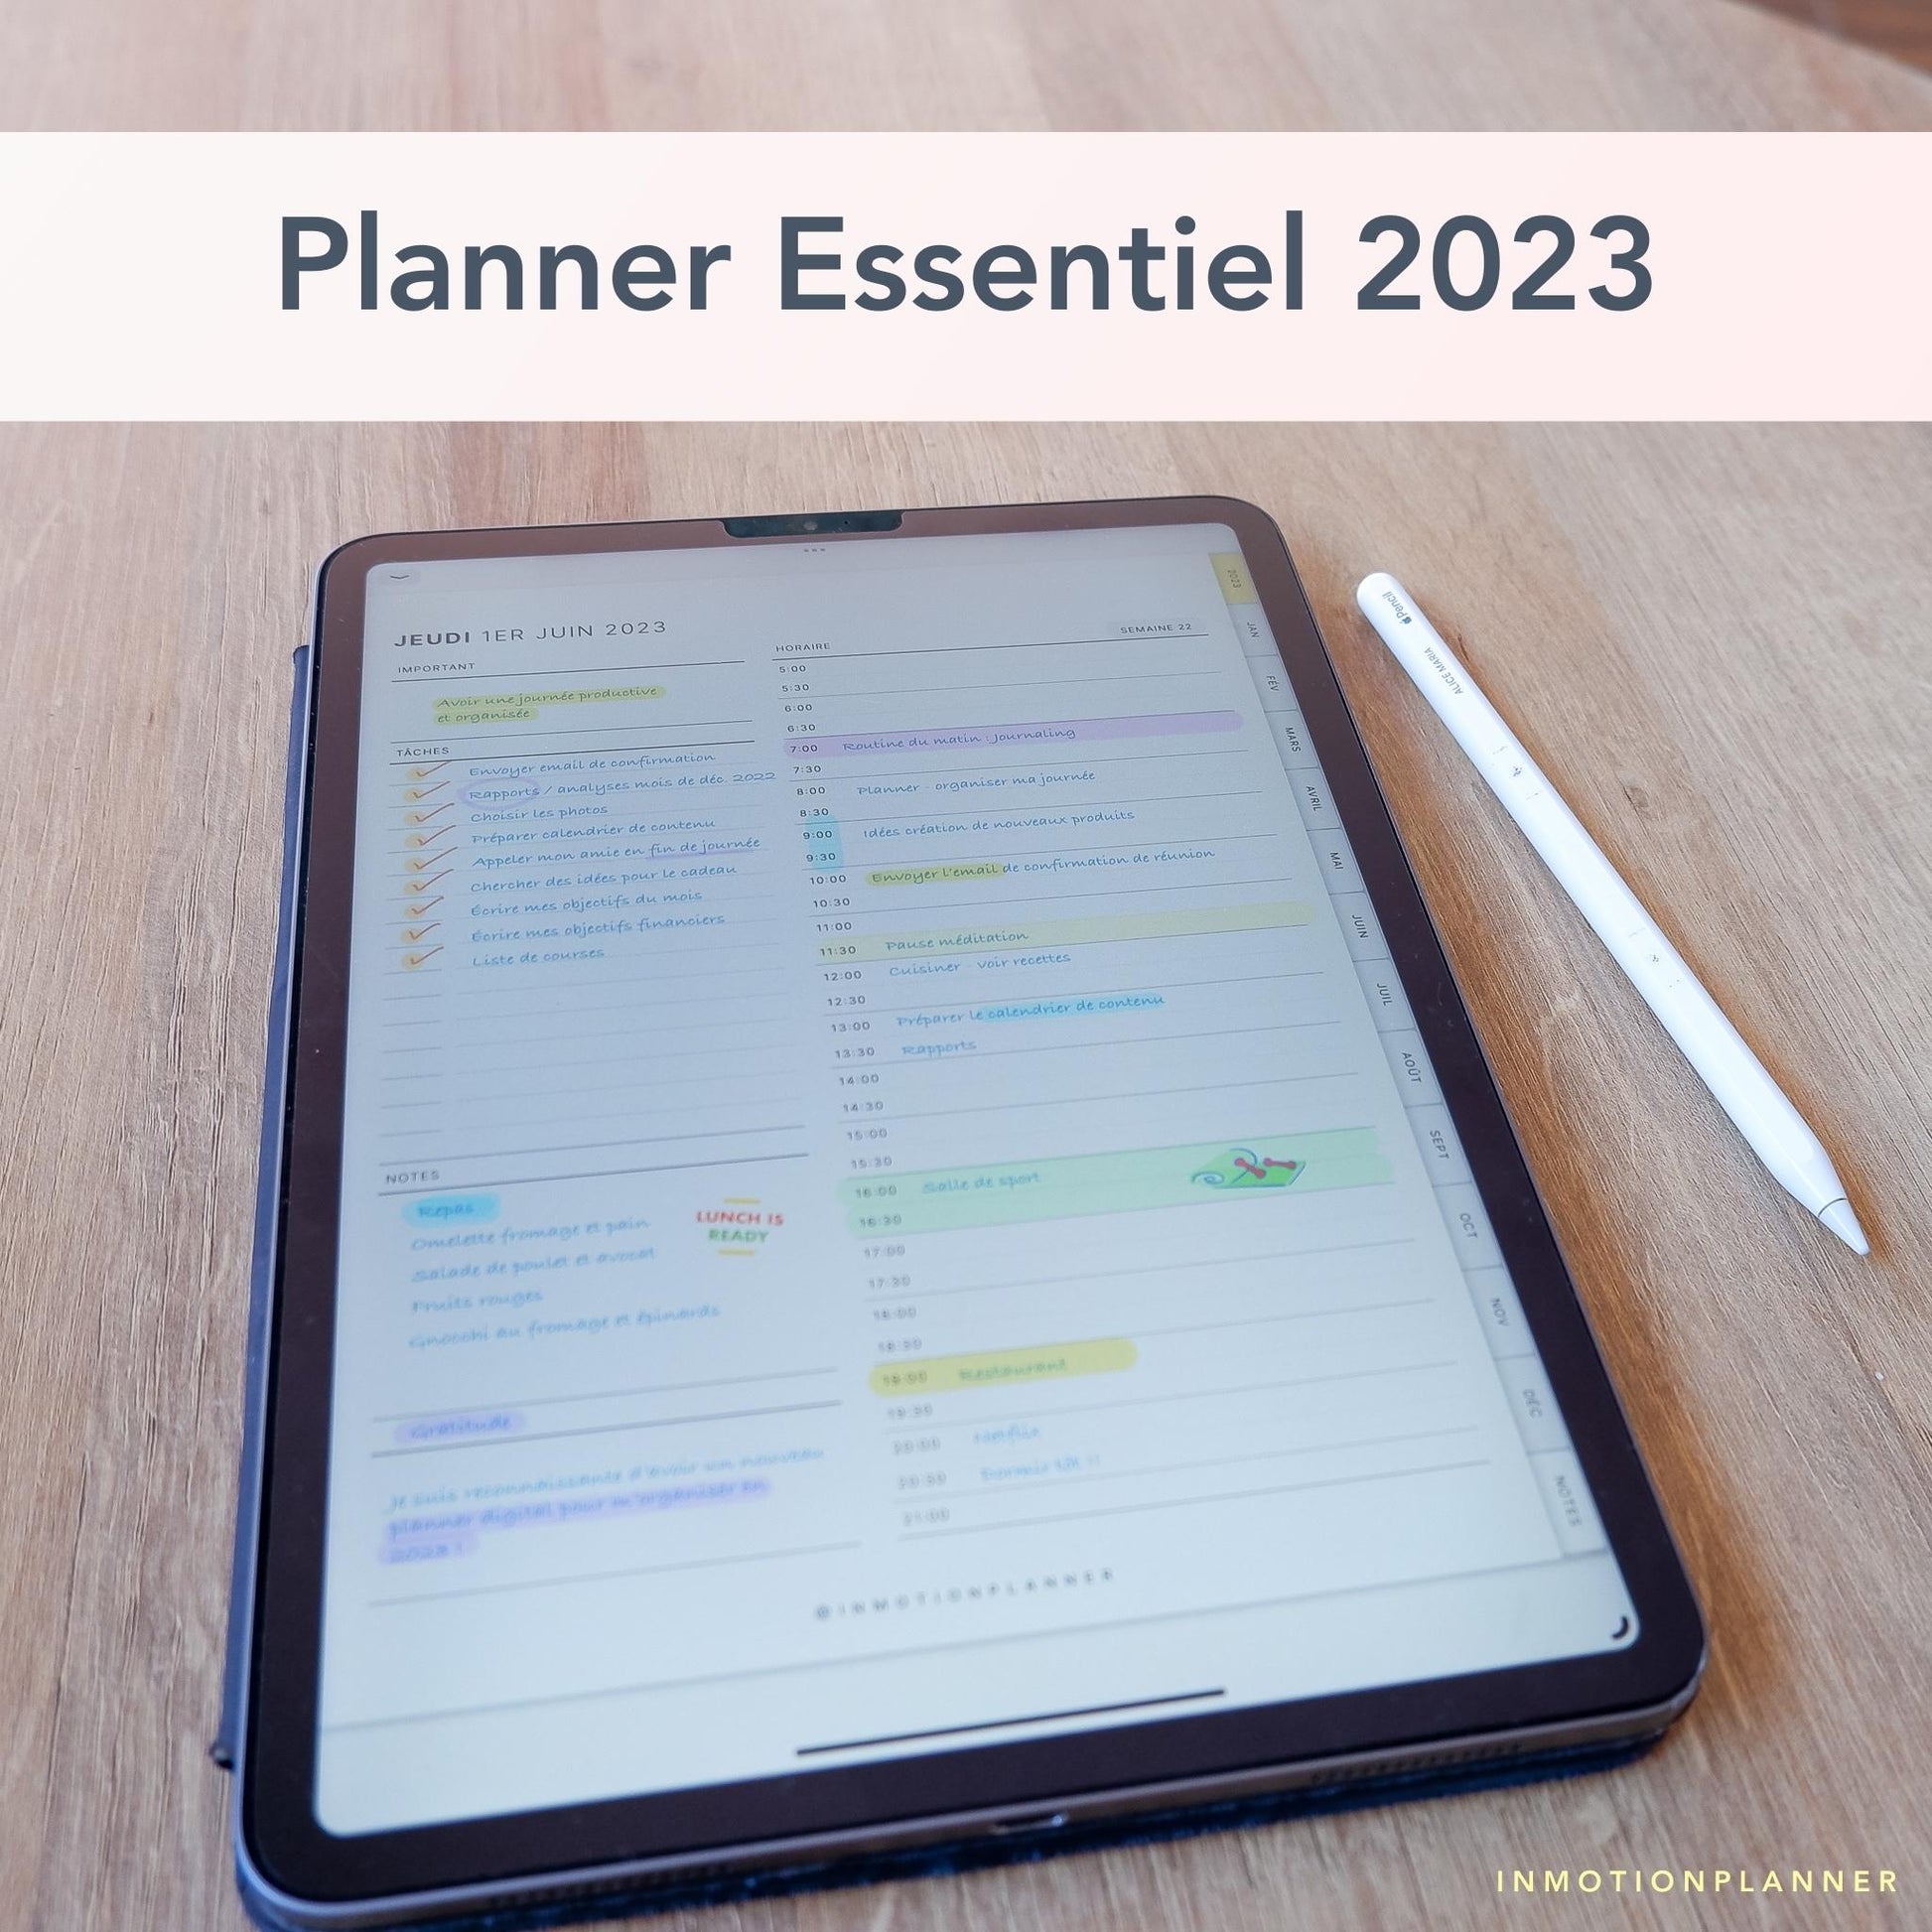 Planner digital daté 2023 de InMotion Planner page journalière sur iPad